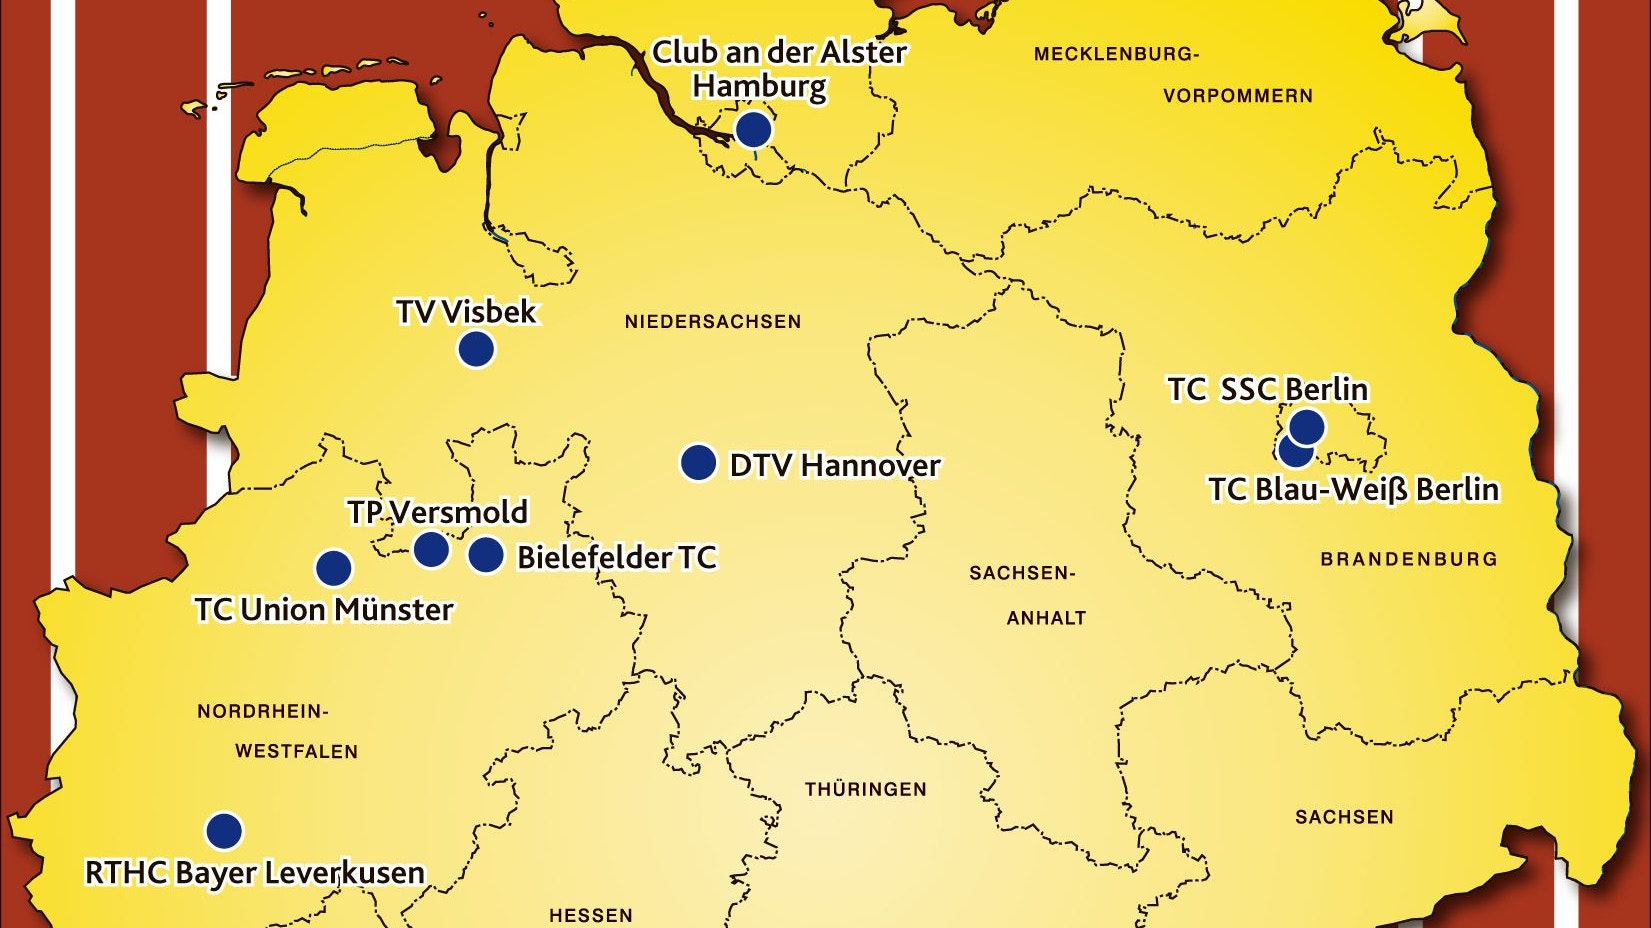 Neun Teams in der 2. Liga Nord: Der TV Visbek und Versmold sind die Aufsteiger. Grafik; von der Heide